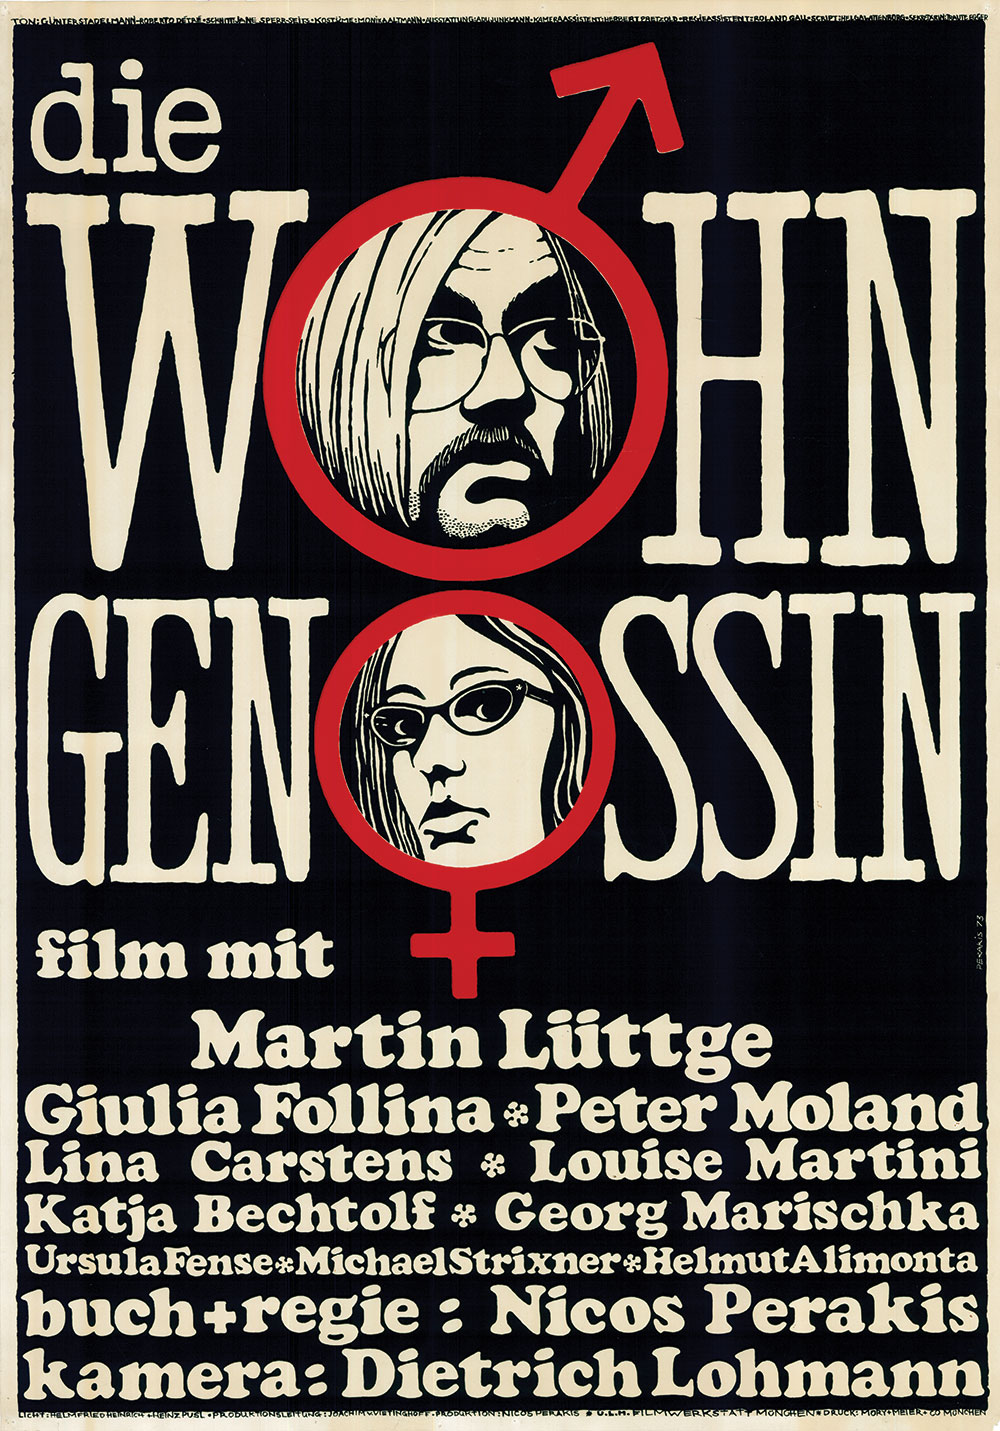 DIE WOHNGENOSSIN poster